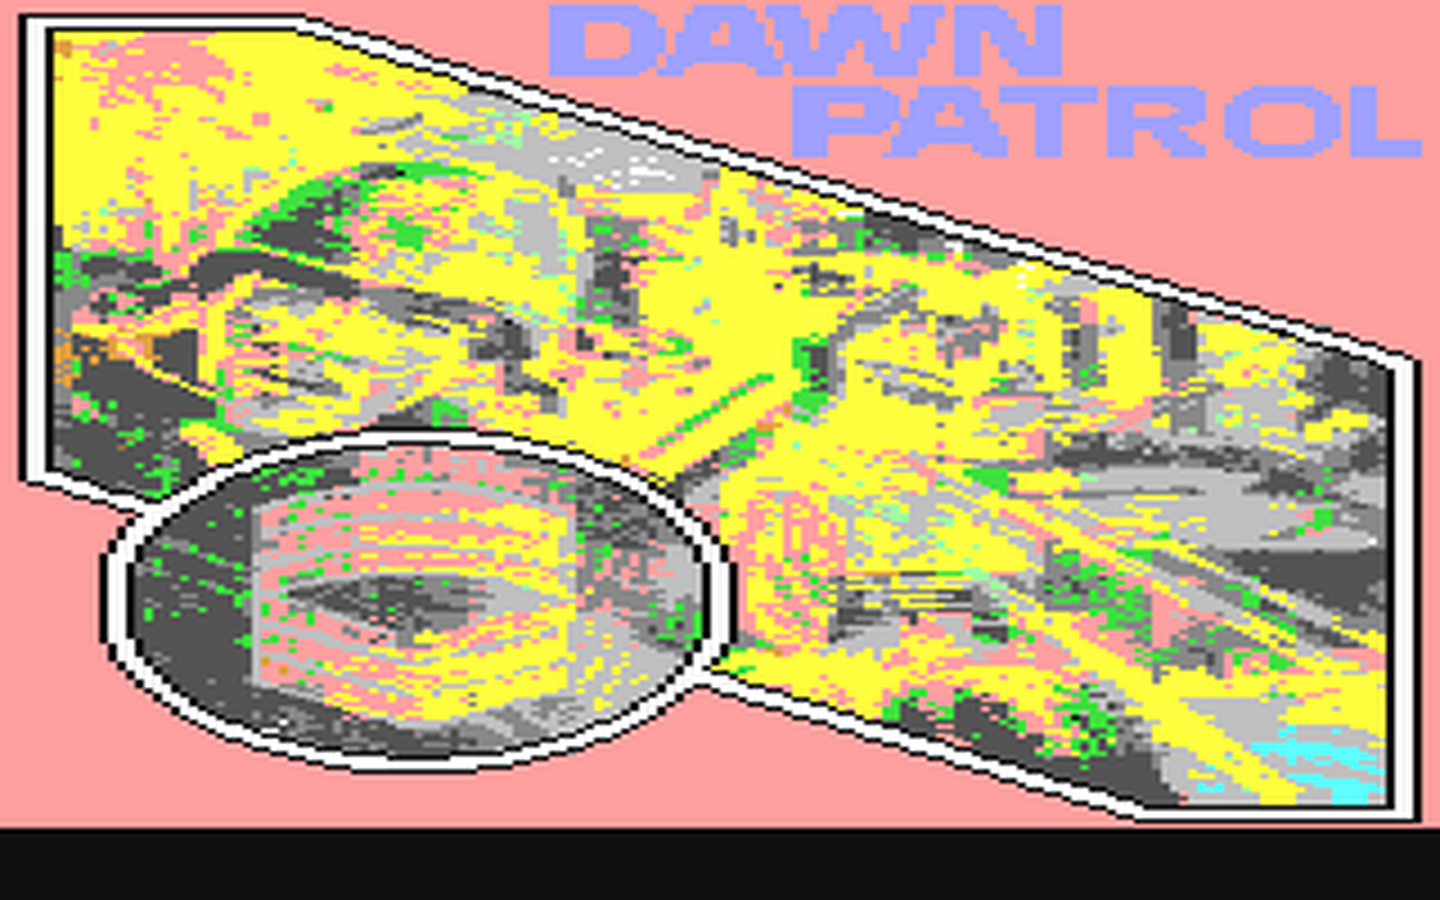 C64 GameBase Dawn_Patrol K-Tek/K-Tel_Software_Inc. 1983